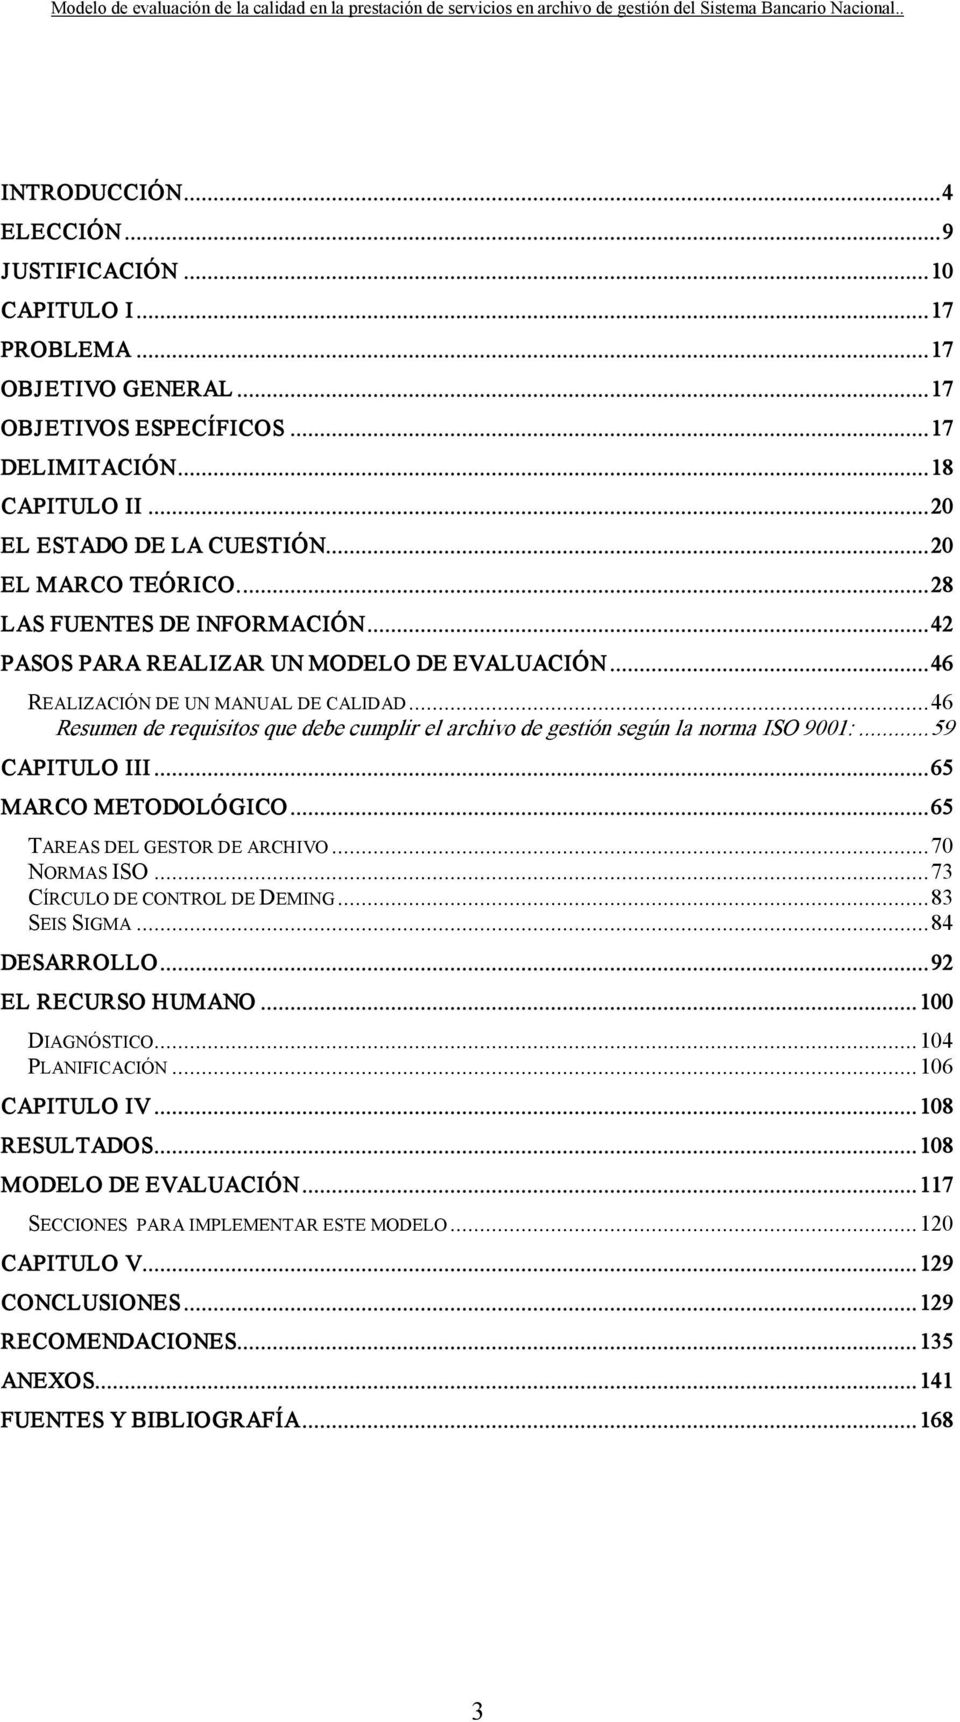 ..46 Resumen de requisitos que debe cumplir el archivo de gestión según la norma ISO 9001:...59 CAPITULO III...65 MARCO METODOLÓGICO...65 TAREAS DEL GESTOR DE ARCHIVO...70 NORMAS ISO.